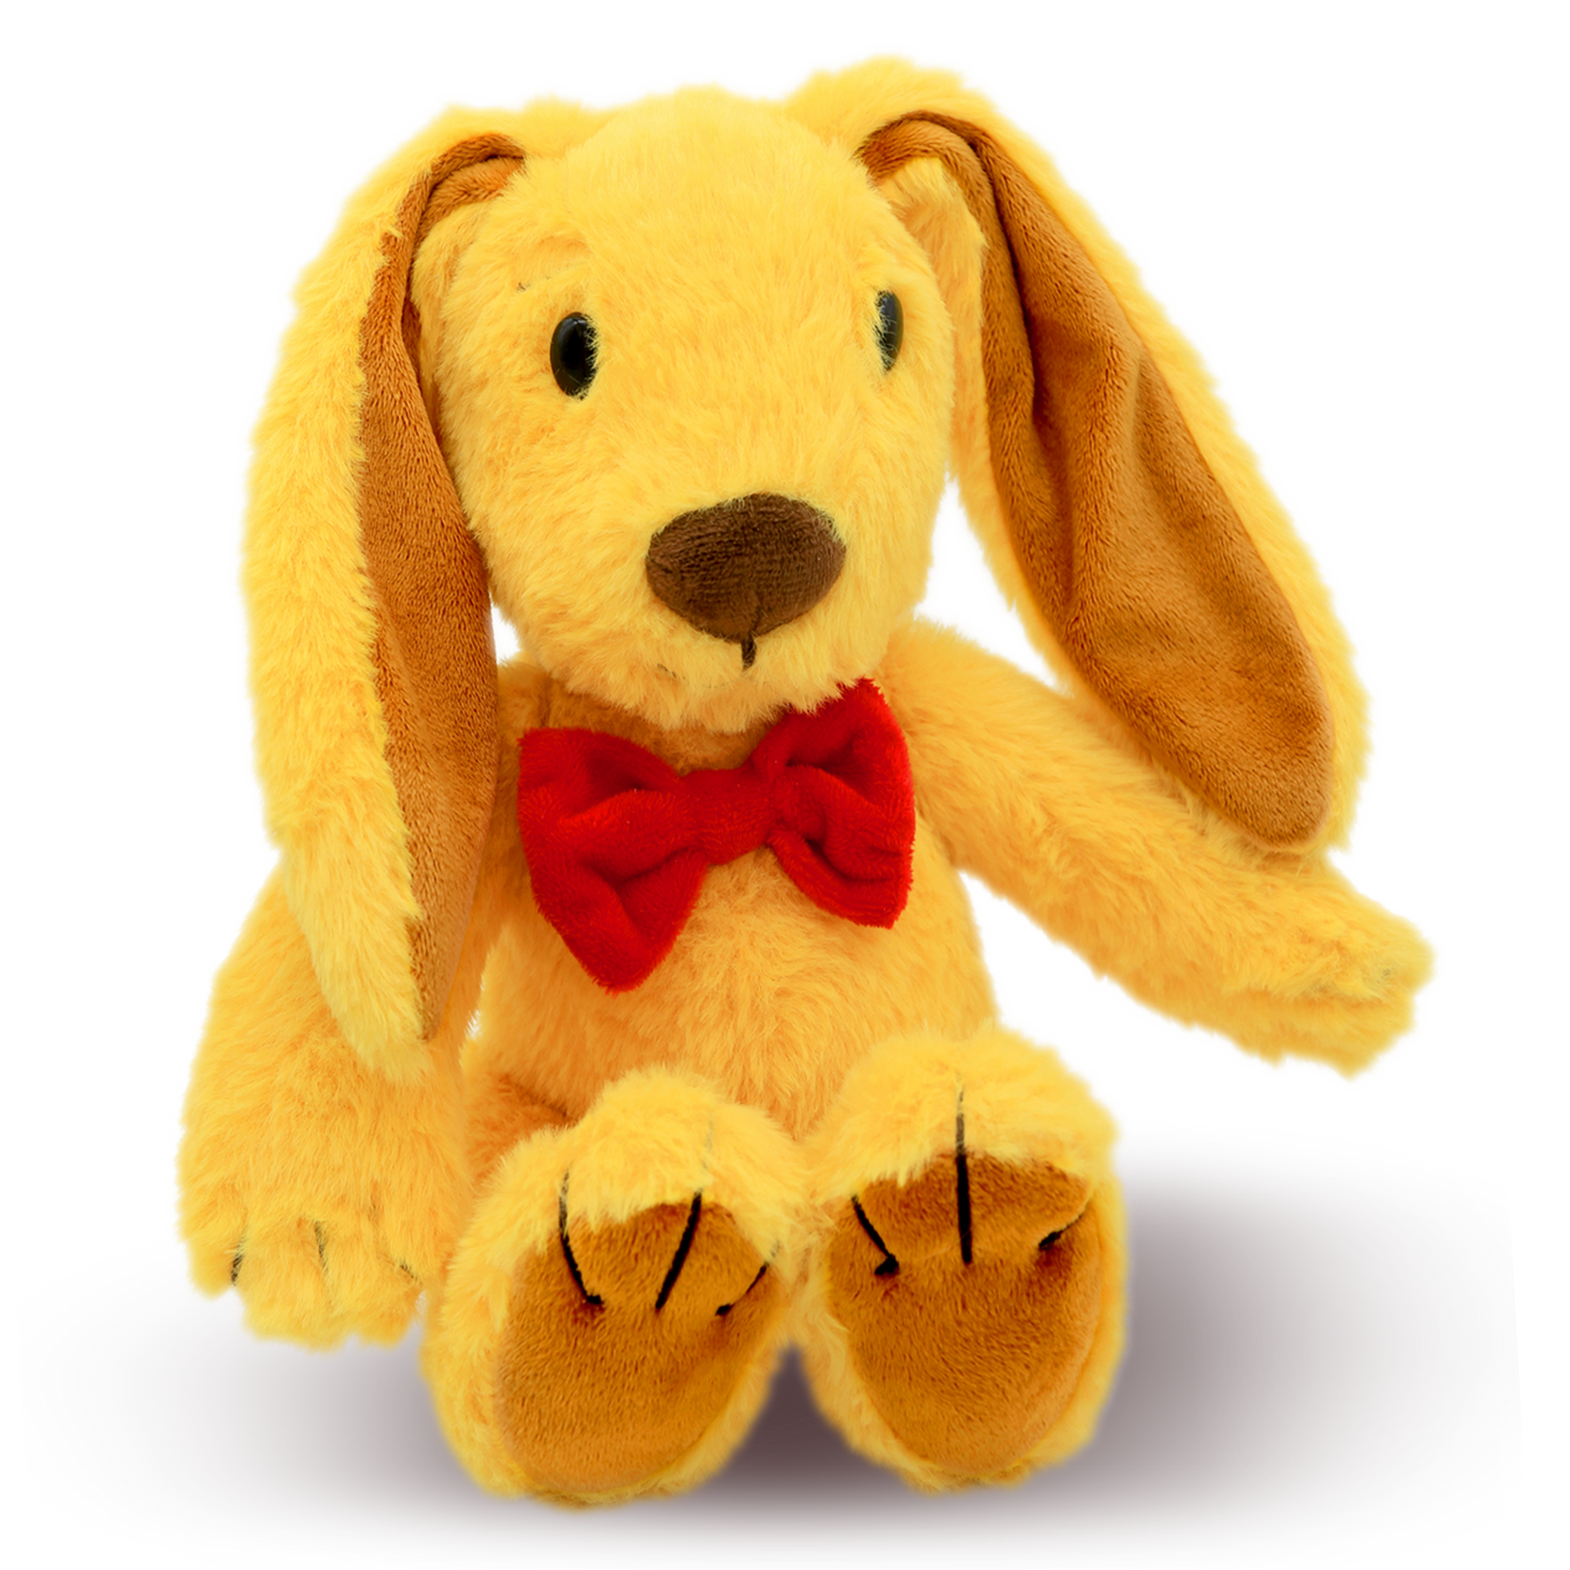 Zeke's Bunny Abacus: The Yellow Stuffed Plush